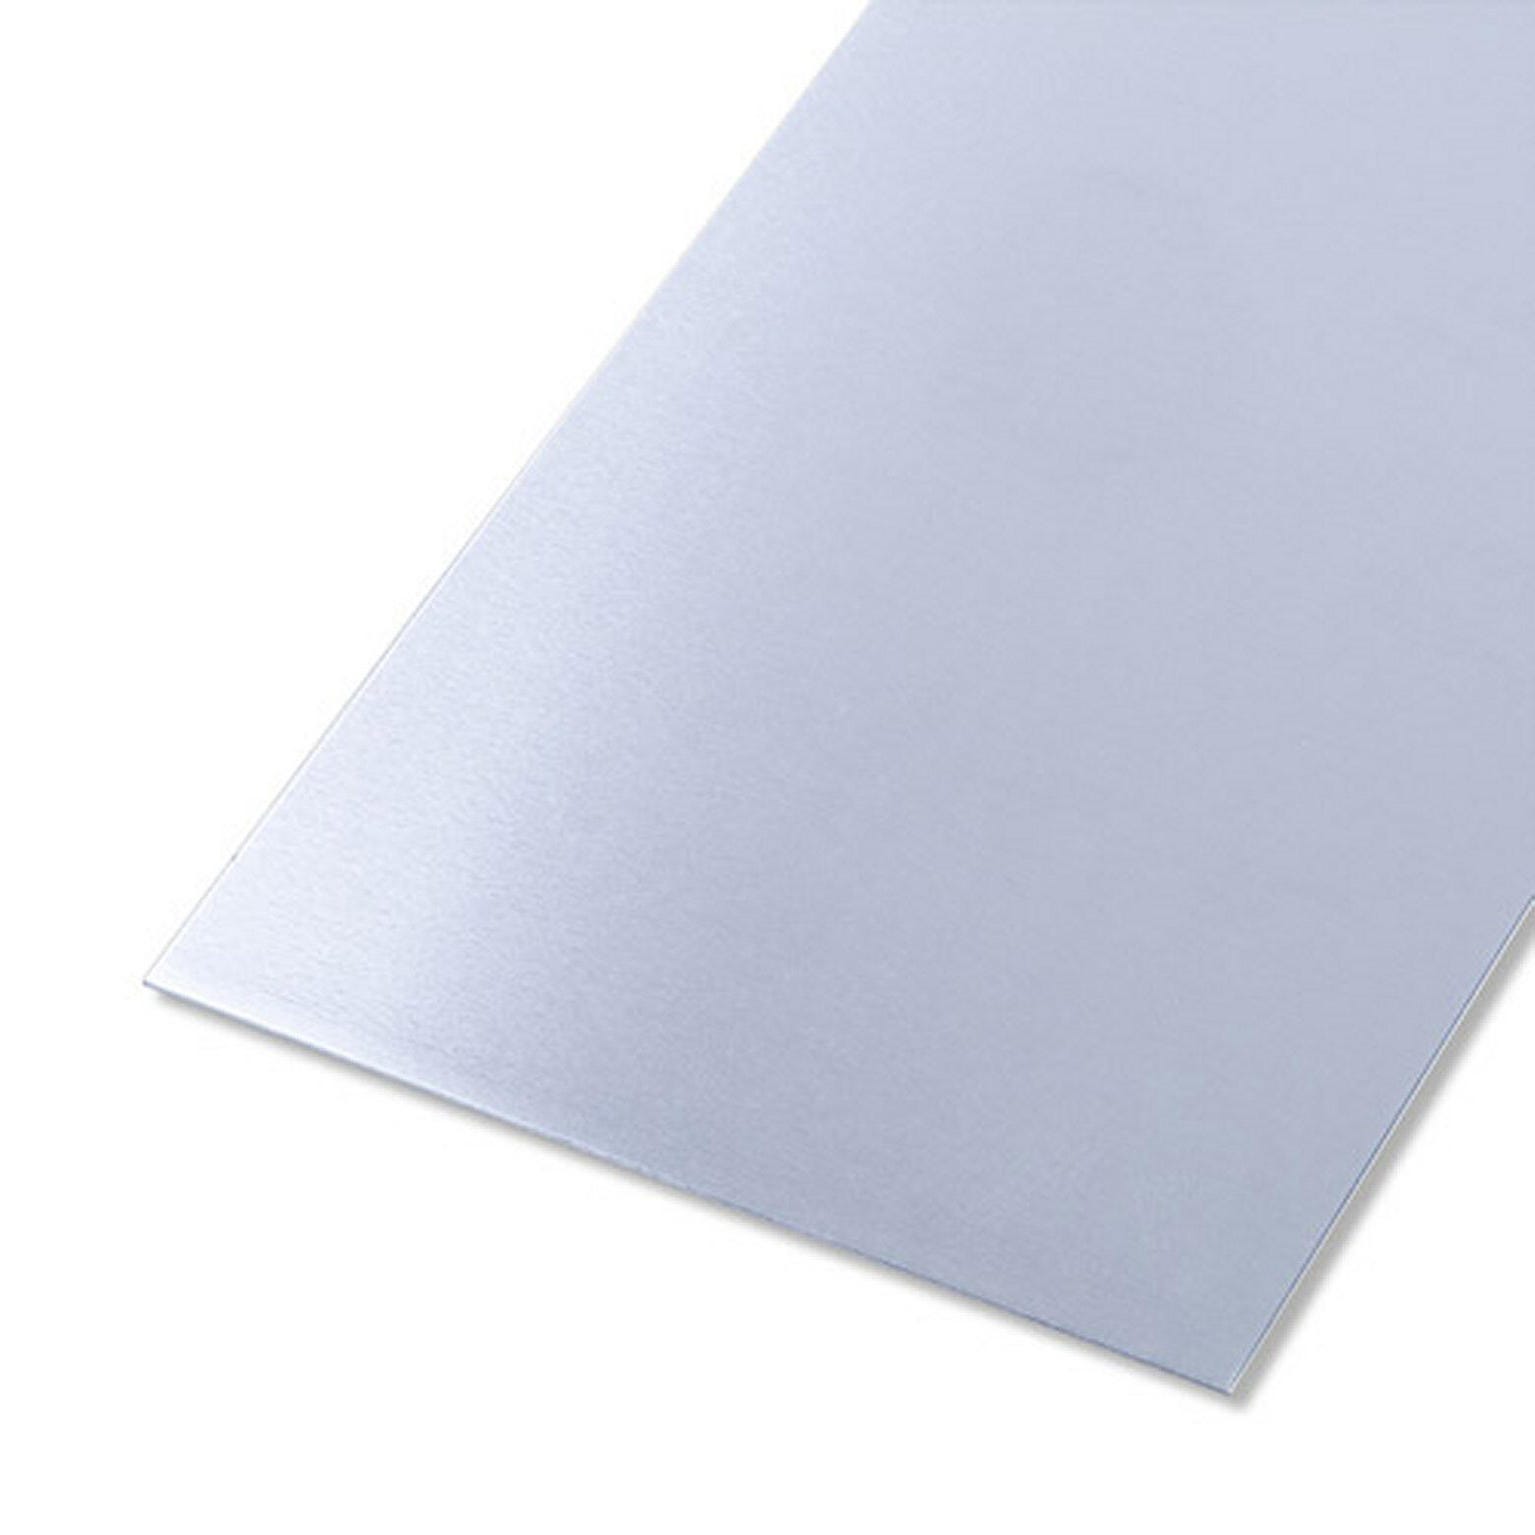 Tôle inox lisse brut gris L.500 x l.250 mm, Ep.0.5 mm